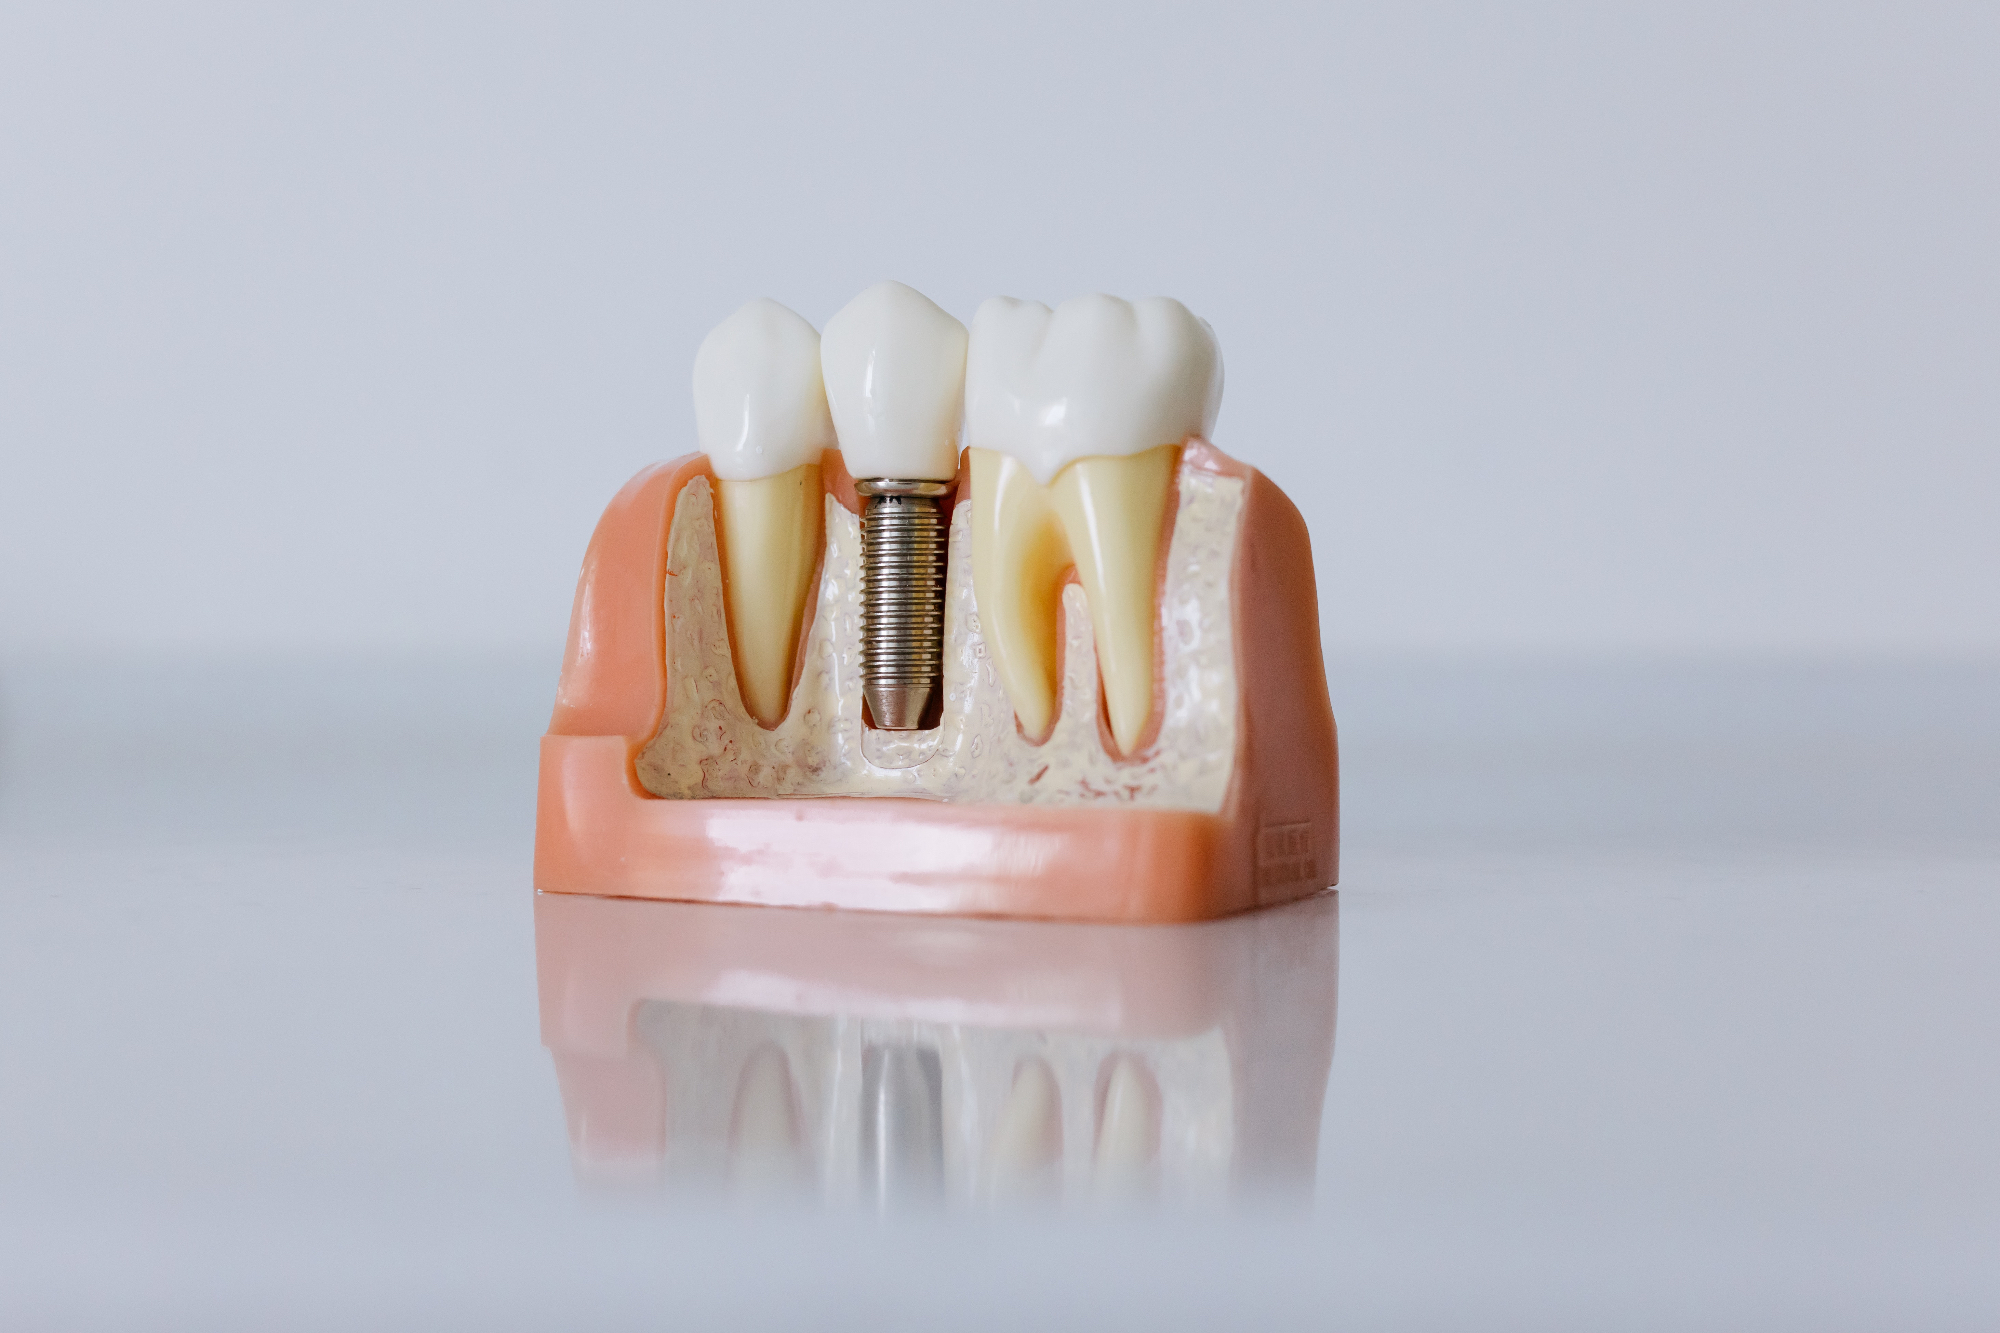 Zobni implantati so izdelani iz izjemno trpežnega materiala